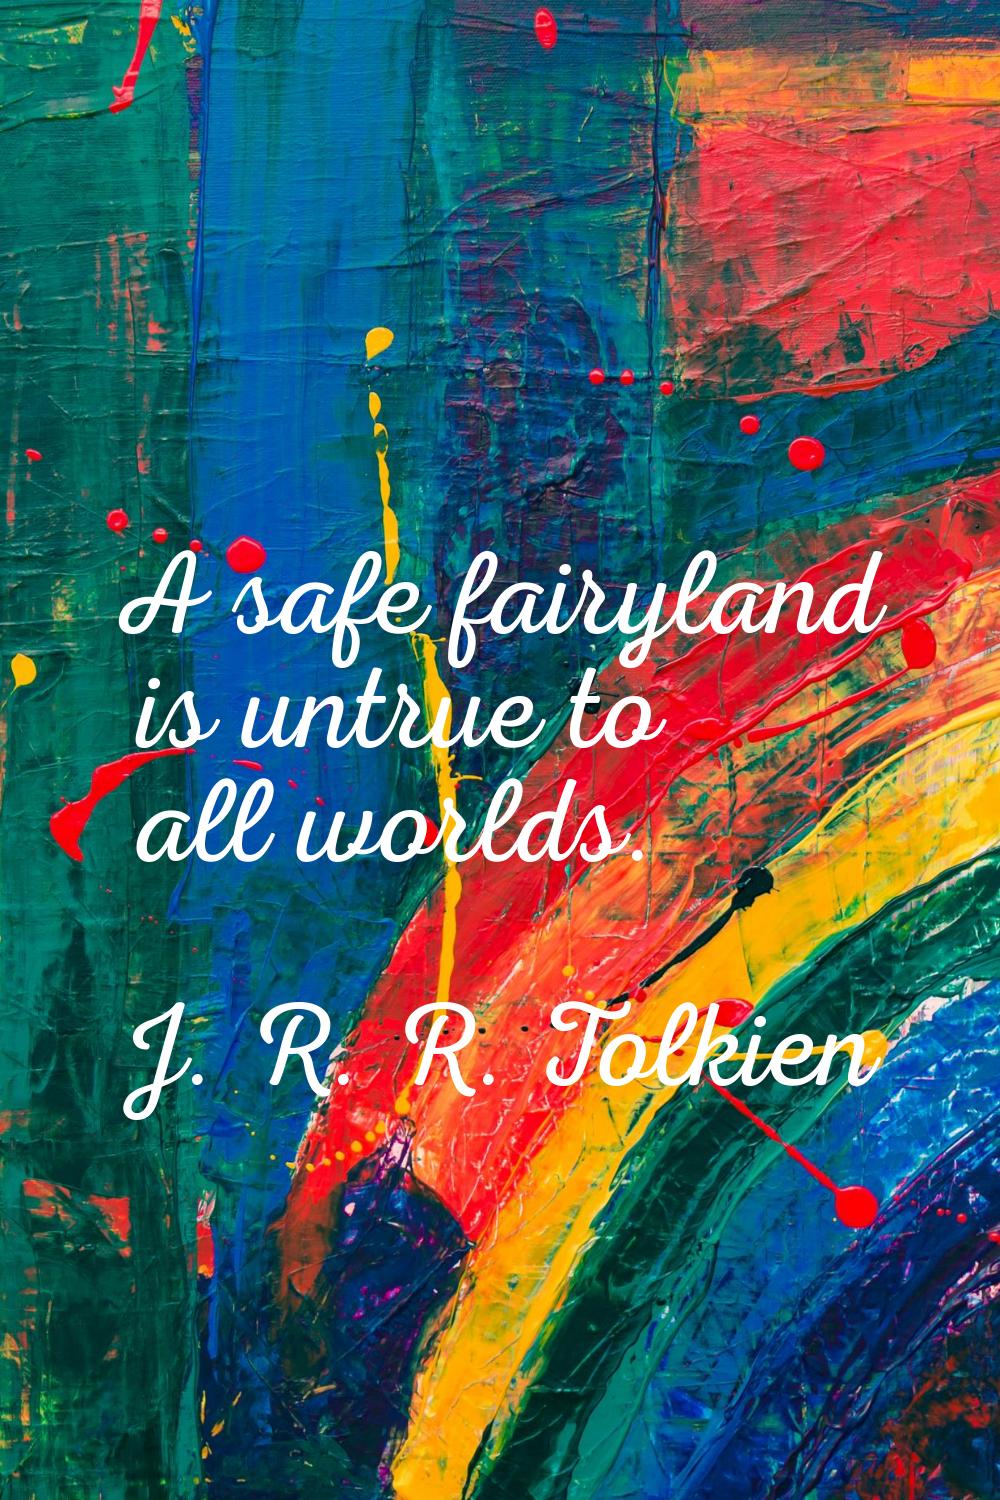 A safe fairyland is untrue to all worlds.